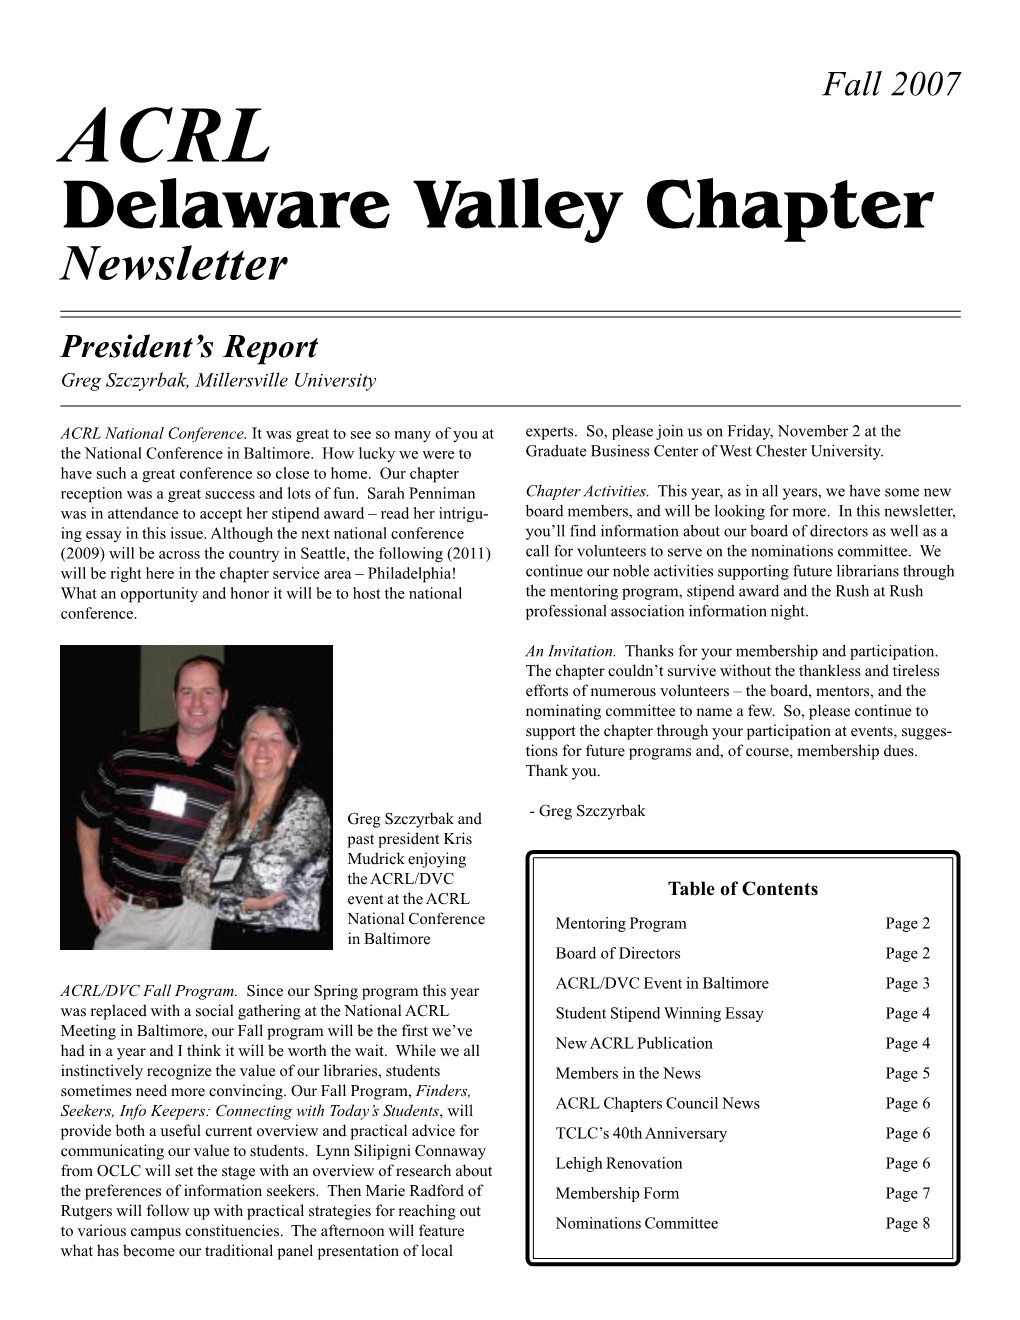 Delaware Valley Chapter Newsletter